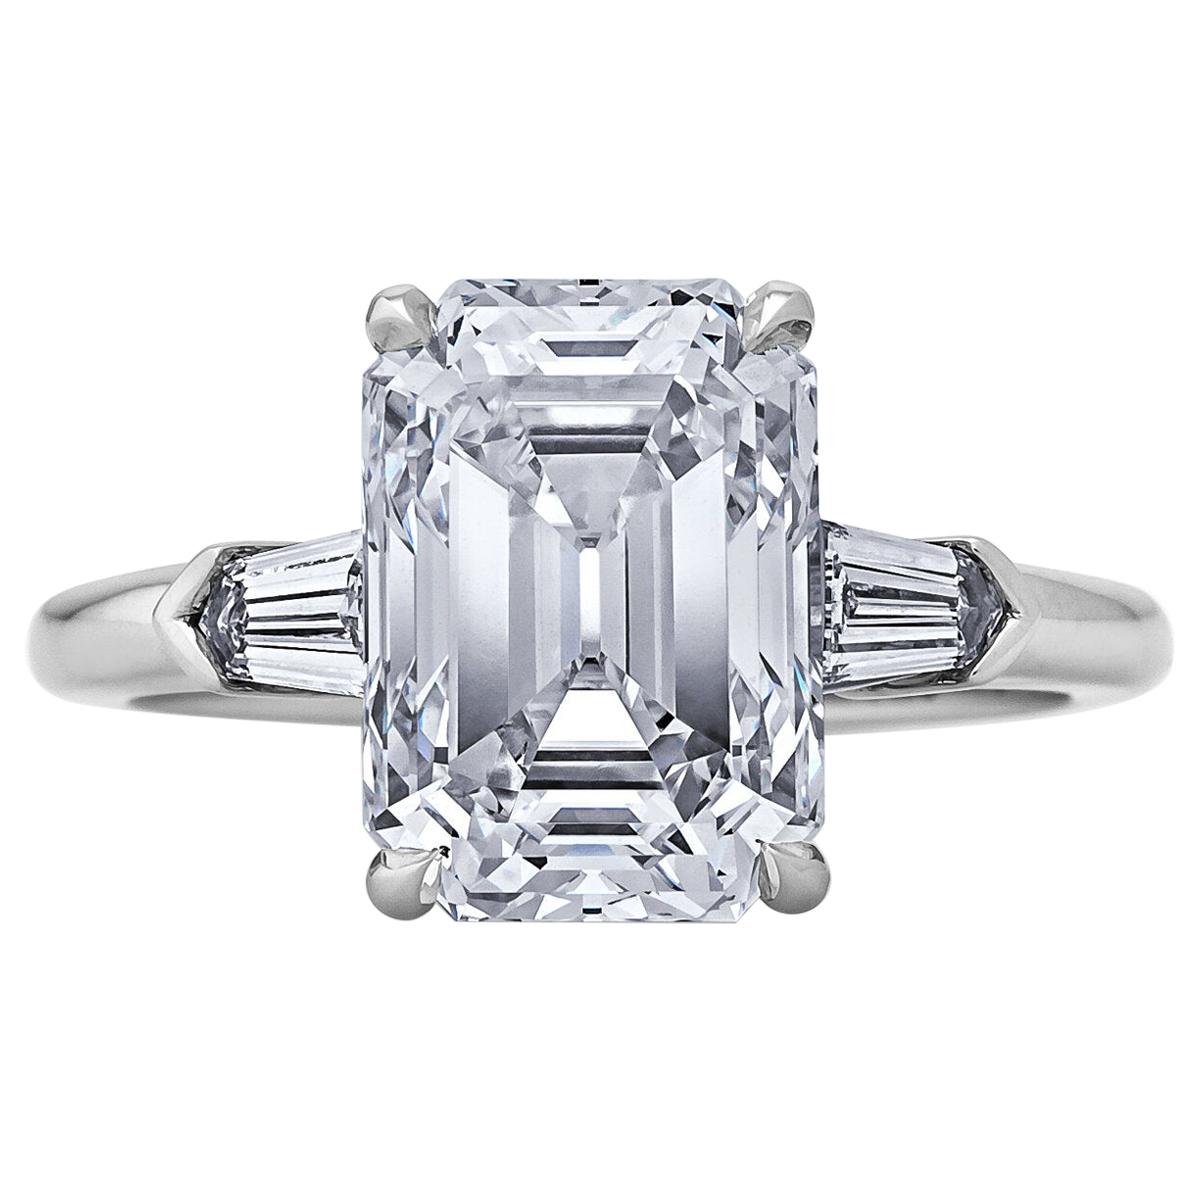 4.42 Carat Emerald Cut Diamond Platinum Engagement Ring